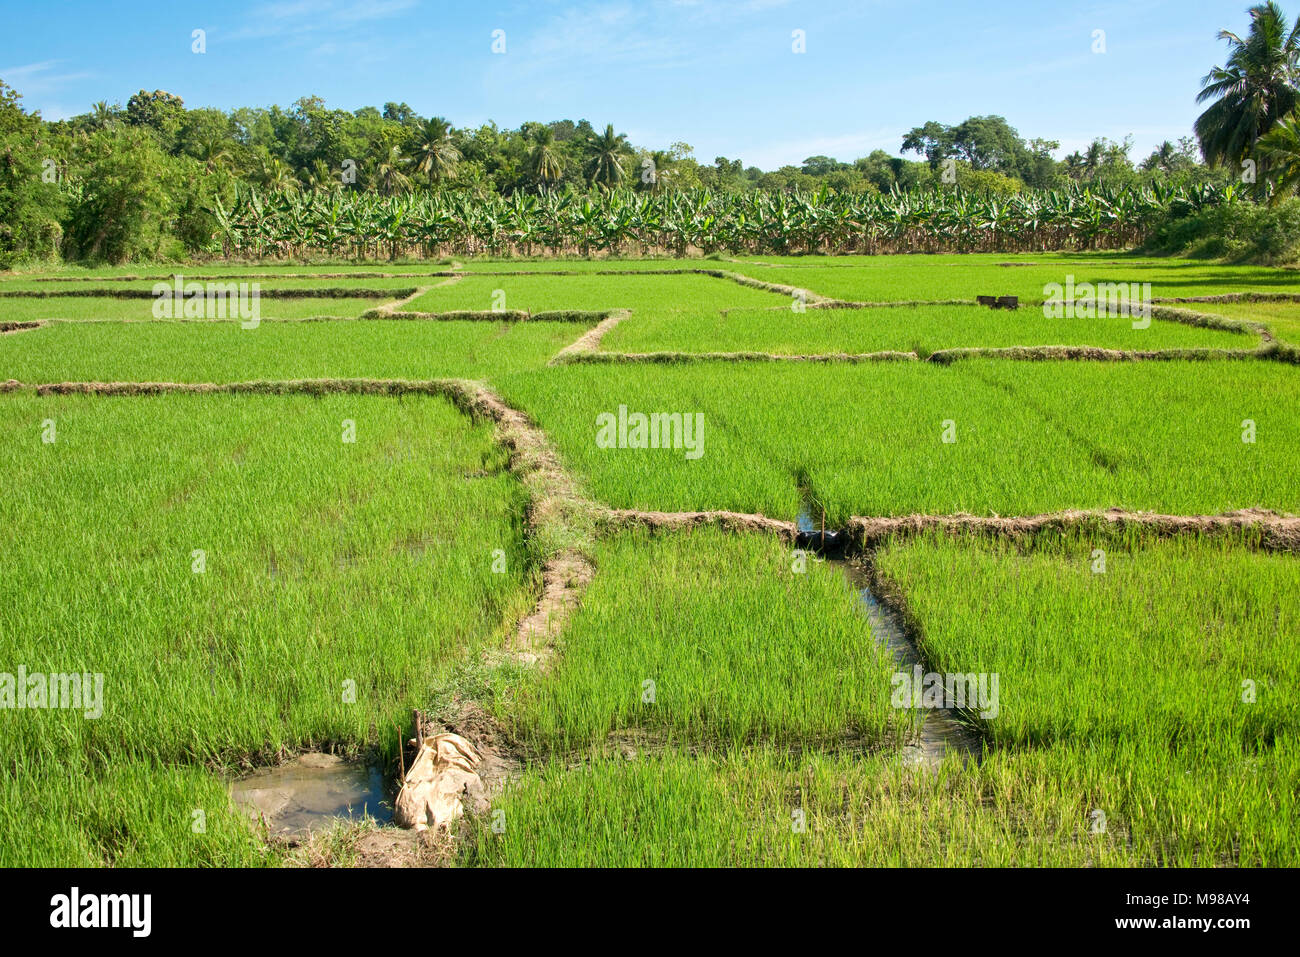 Vue d'un champ de riz au Sri Lanka avec des palmiers à l'arrière-plan sur une journée ensoleillée avec ciel bleu. Banque D'Images